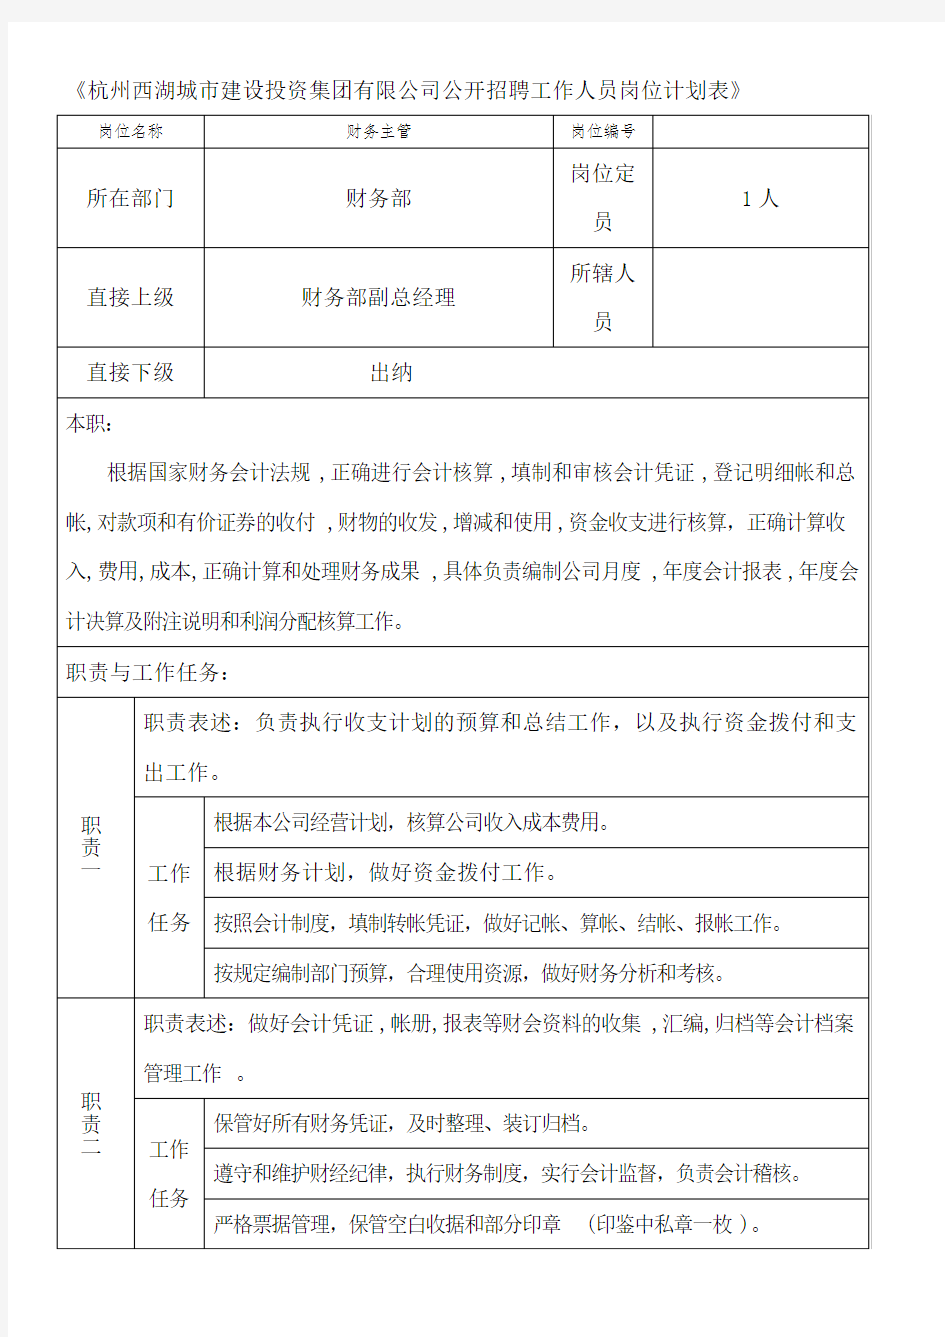 《杭州西湖城市建设投资集团有限公司公开招聘工作人员岗位[001]